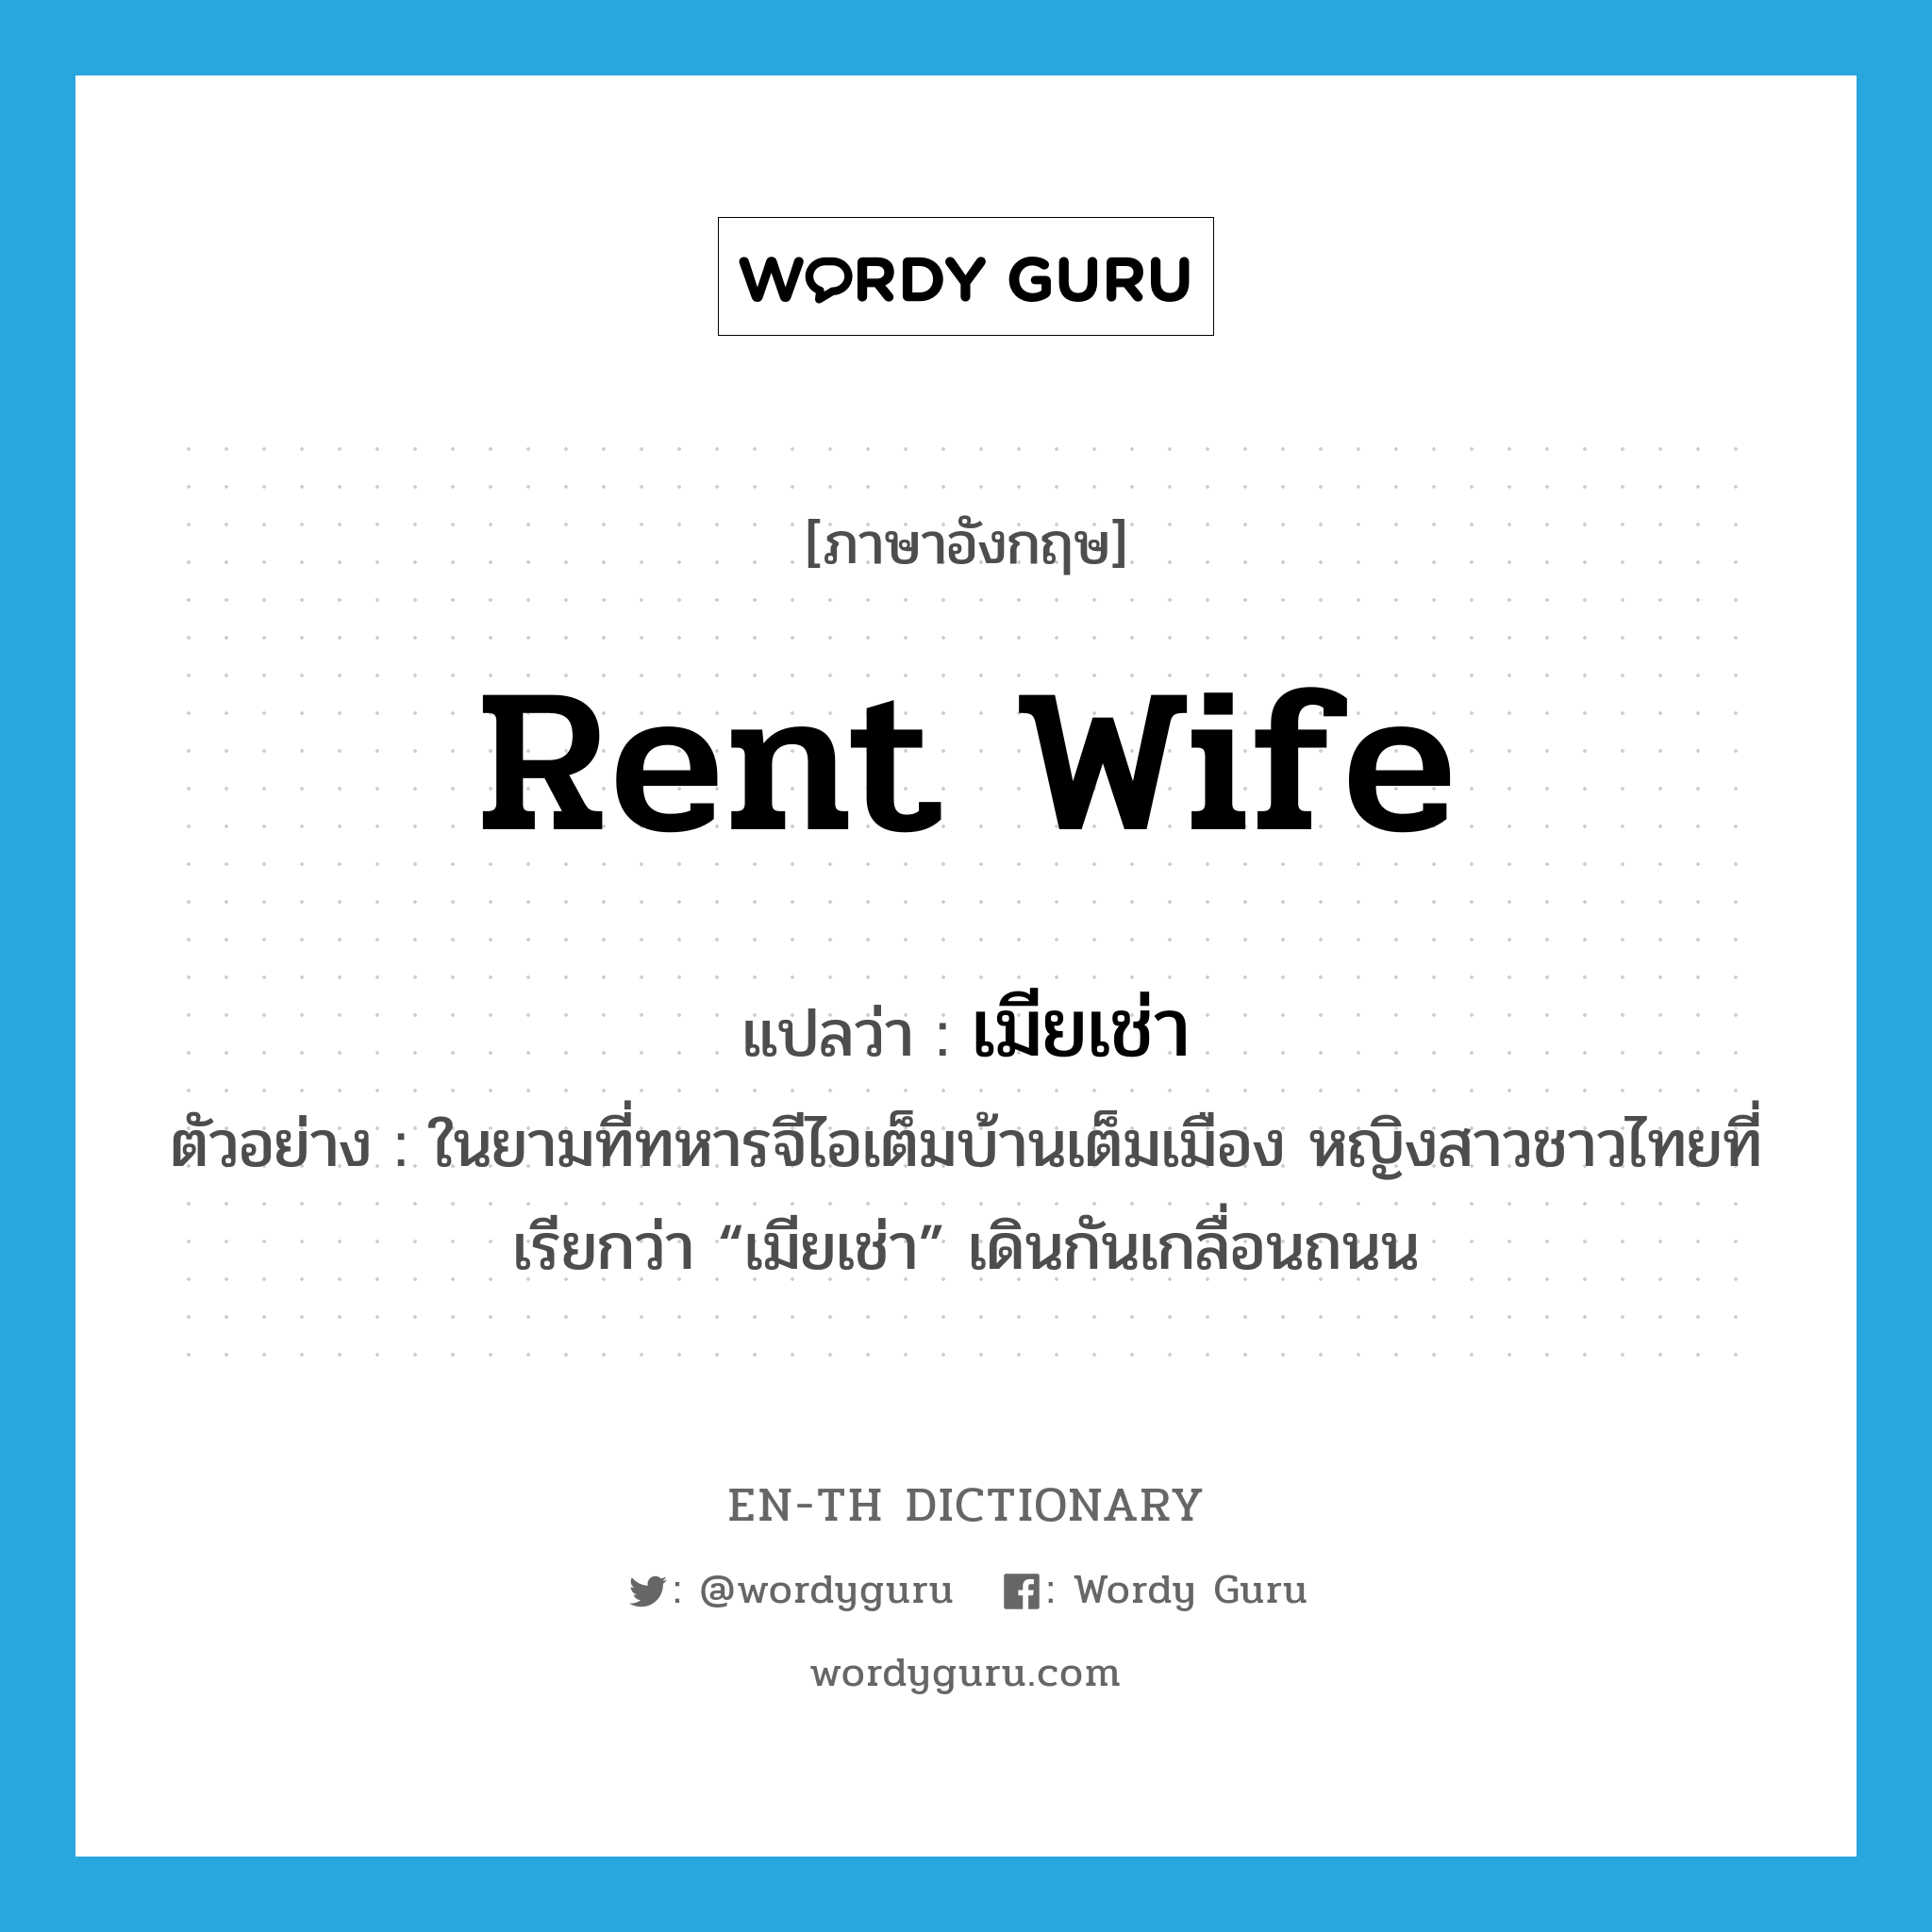 เมียเช่า ภาษาอังกฤษ?, คำศัพท์ภาษาอังกฤษ เมียเช่า แปลว่า rent wife ประเภท N ตัวอย่าง ในยามที่ทหารจีไอเต็มบ้านเต็มเมือง หญิงสาวชาวไทยที่เรียกว่า “เมียเช่า” เดินกันเกลื่อนถนน หมวด N